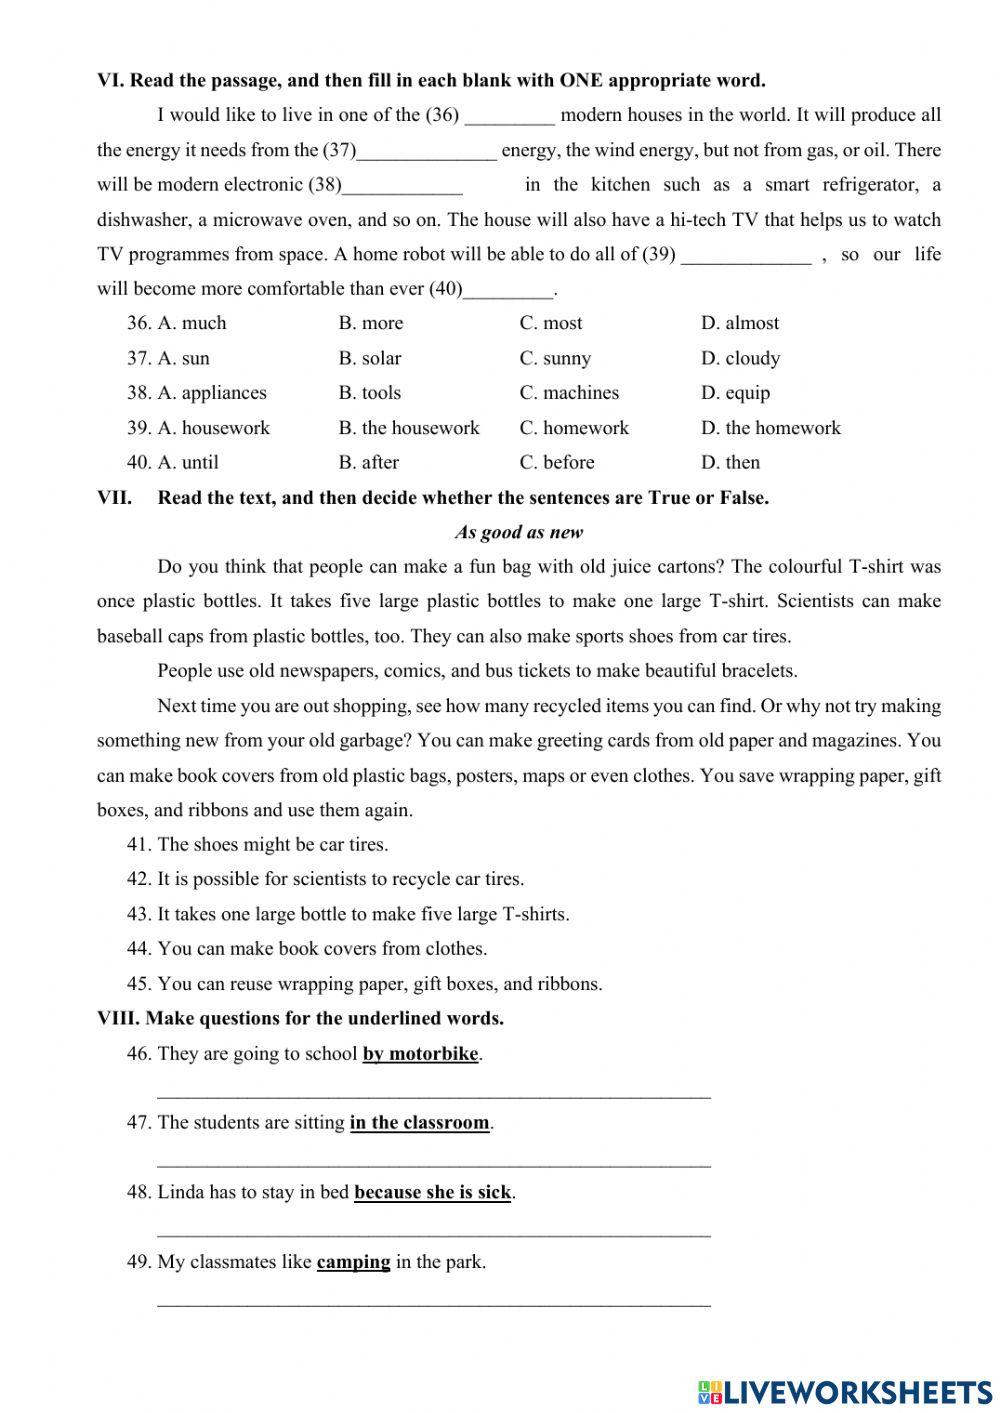 Grade 6 - PRACTICE TEST 3